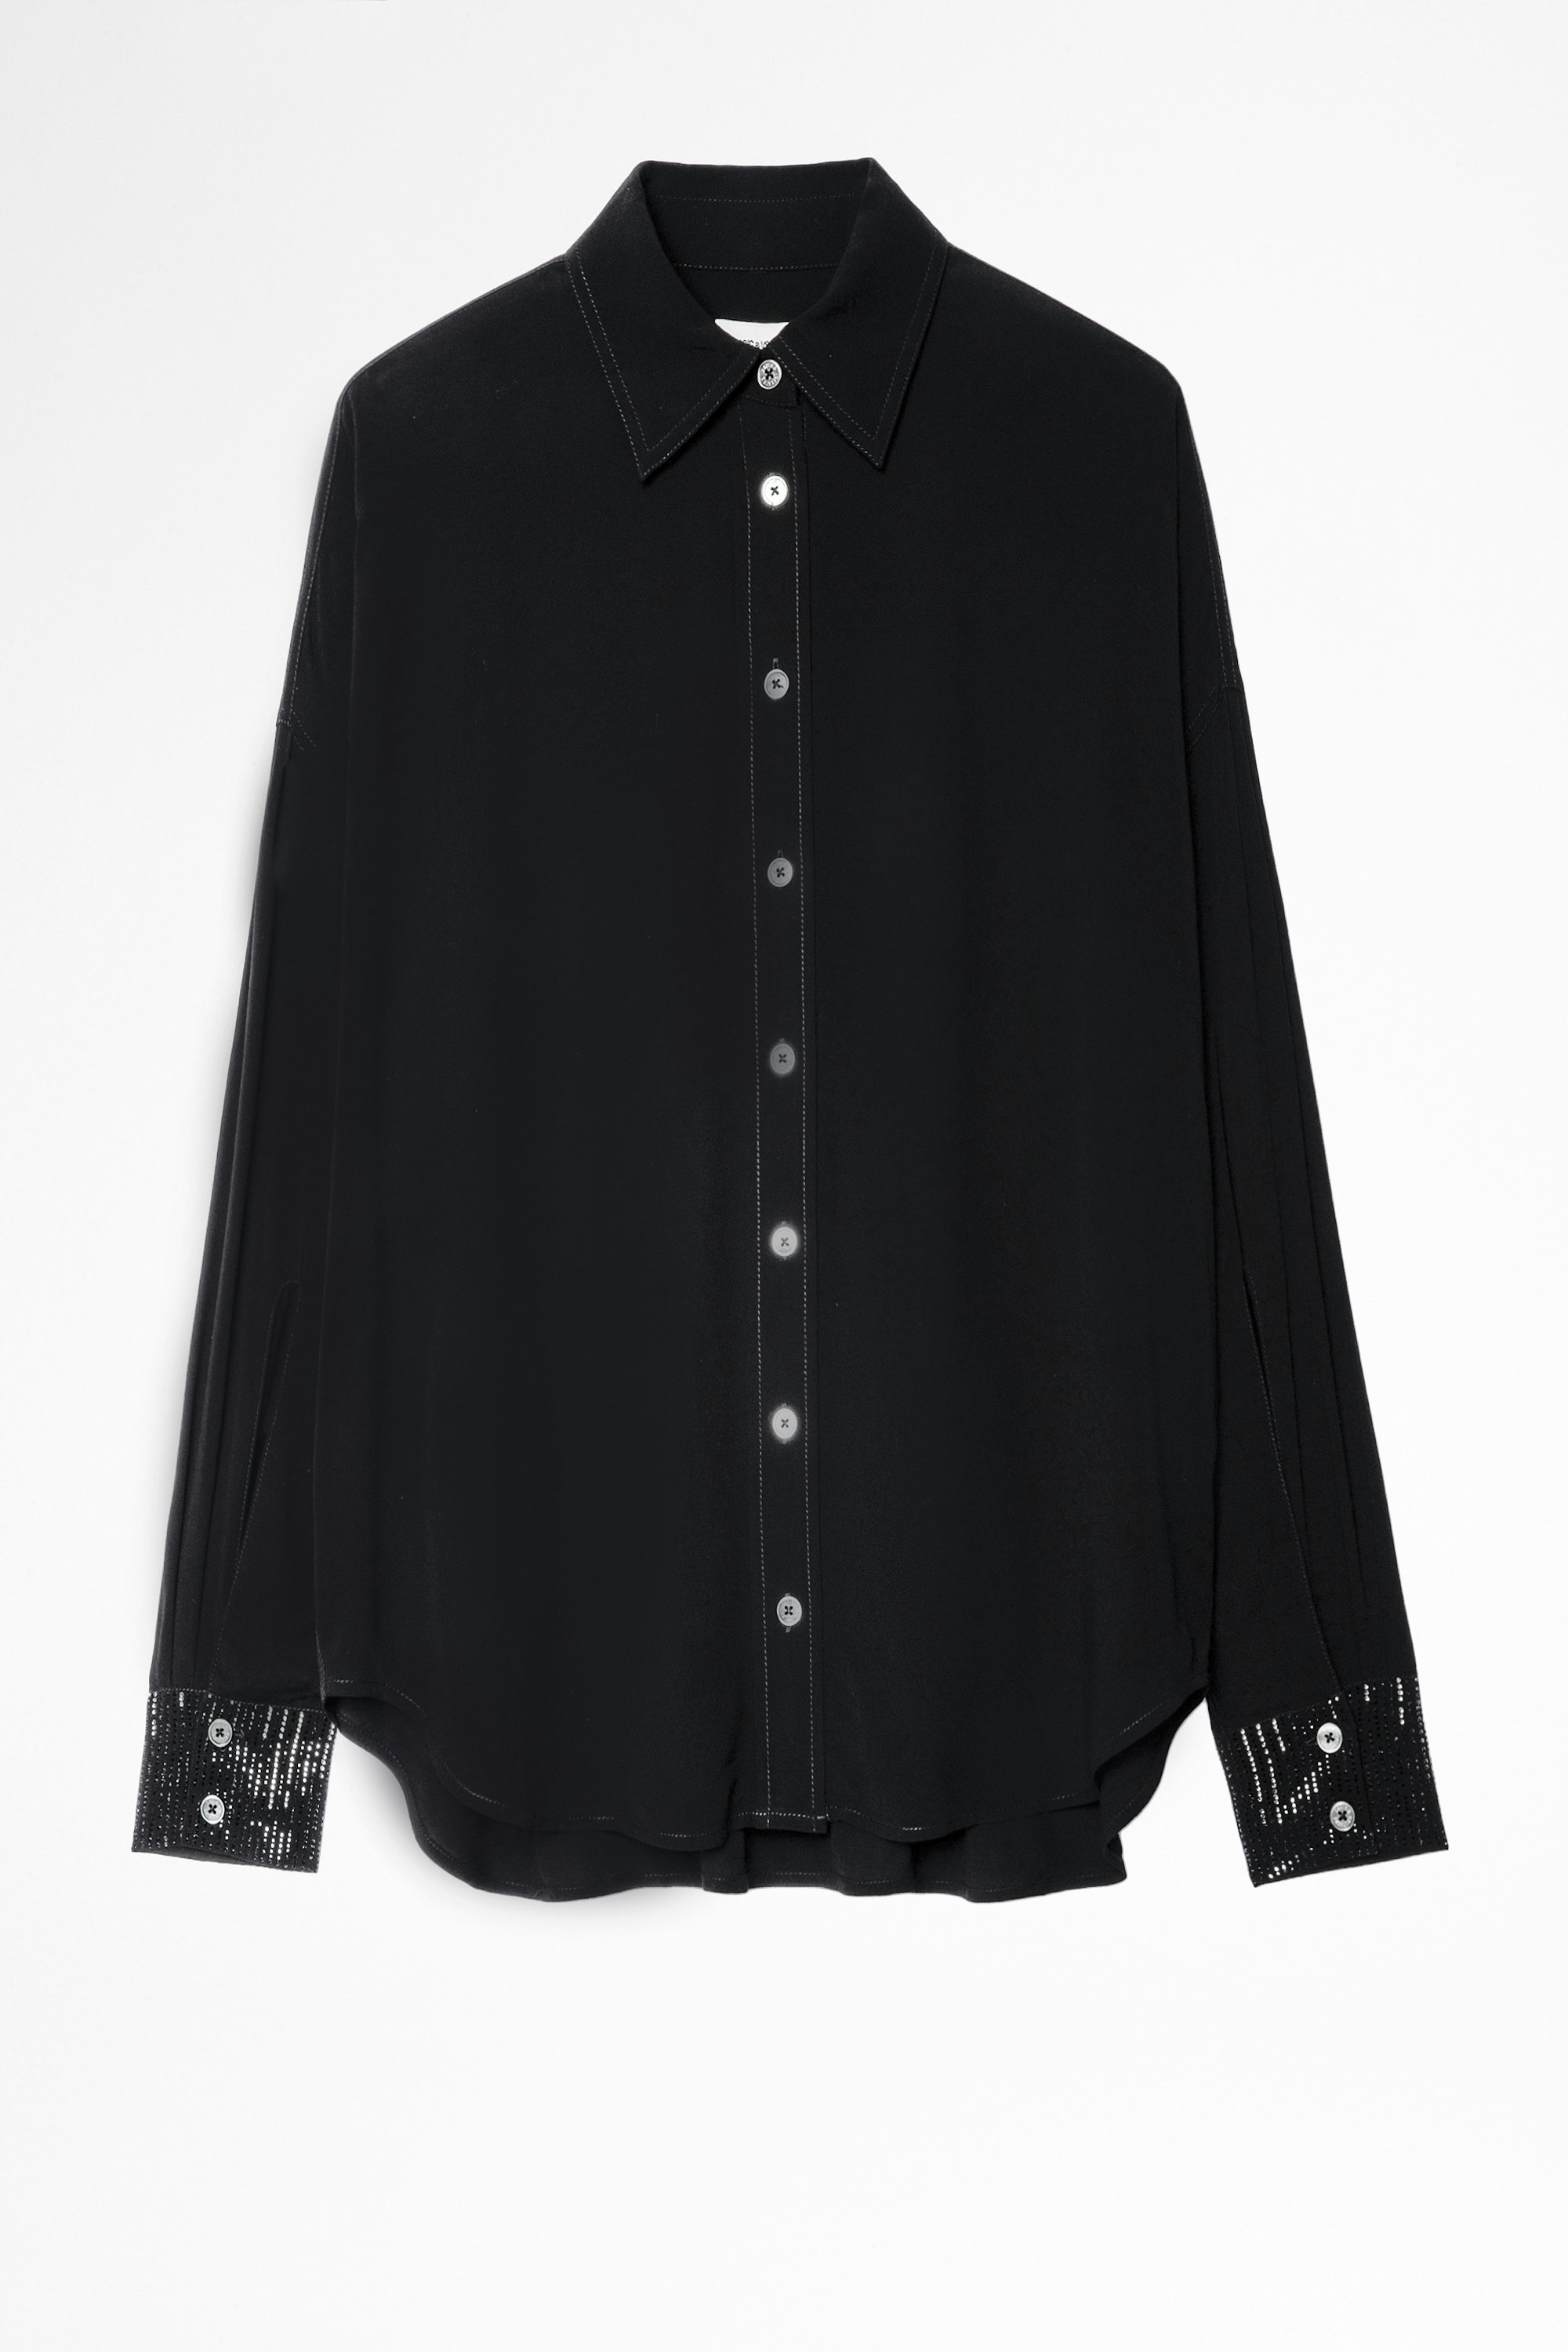 Camicia Tamara Strass Camicia nera con strass sui polsini donna. Realizzato con fibre provenienti da foreste gestite in modo sostenibile